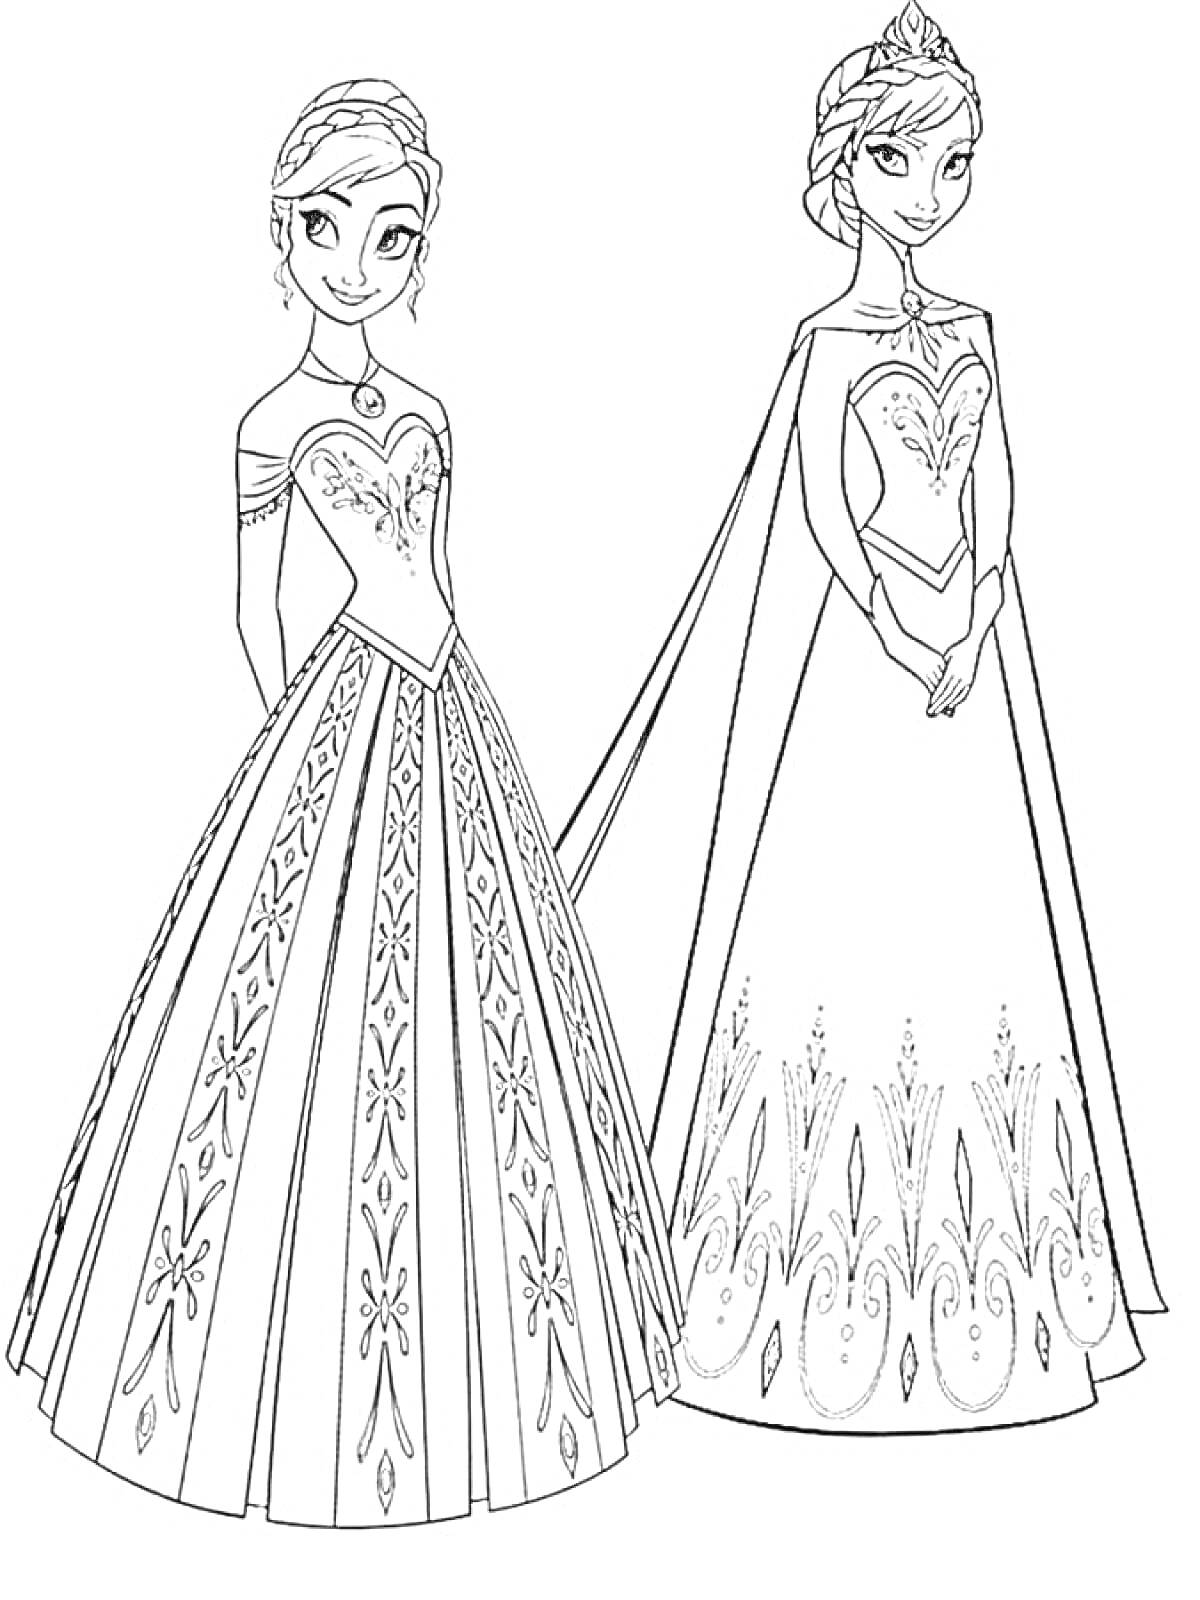 Раскраска Две принцессы в длинных платьях с узорами